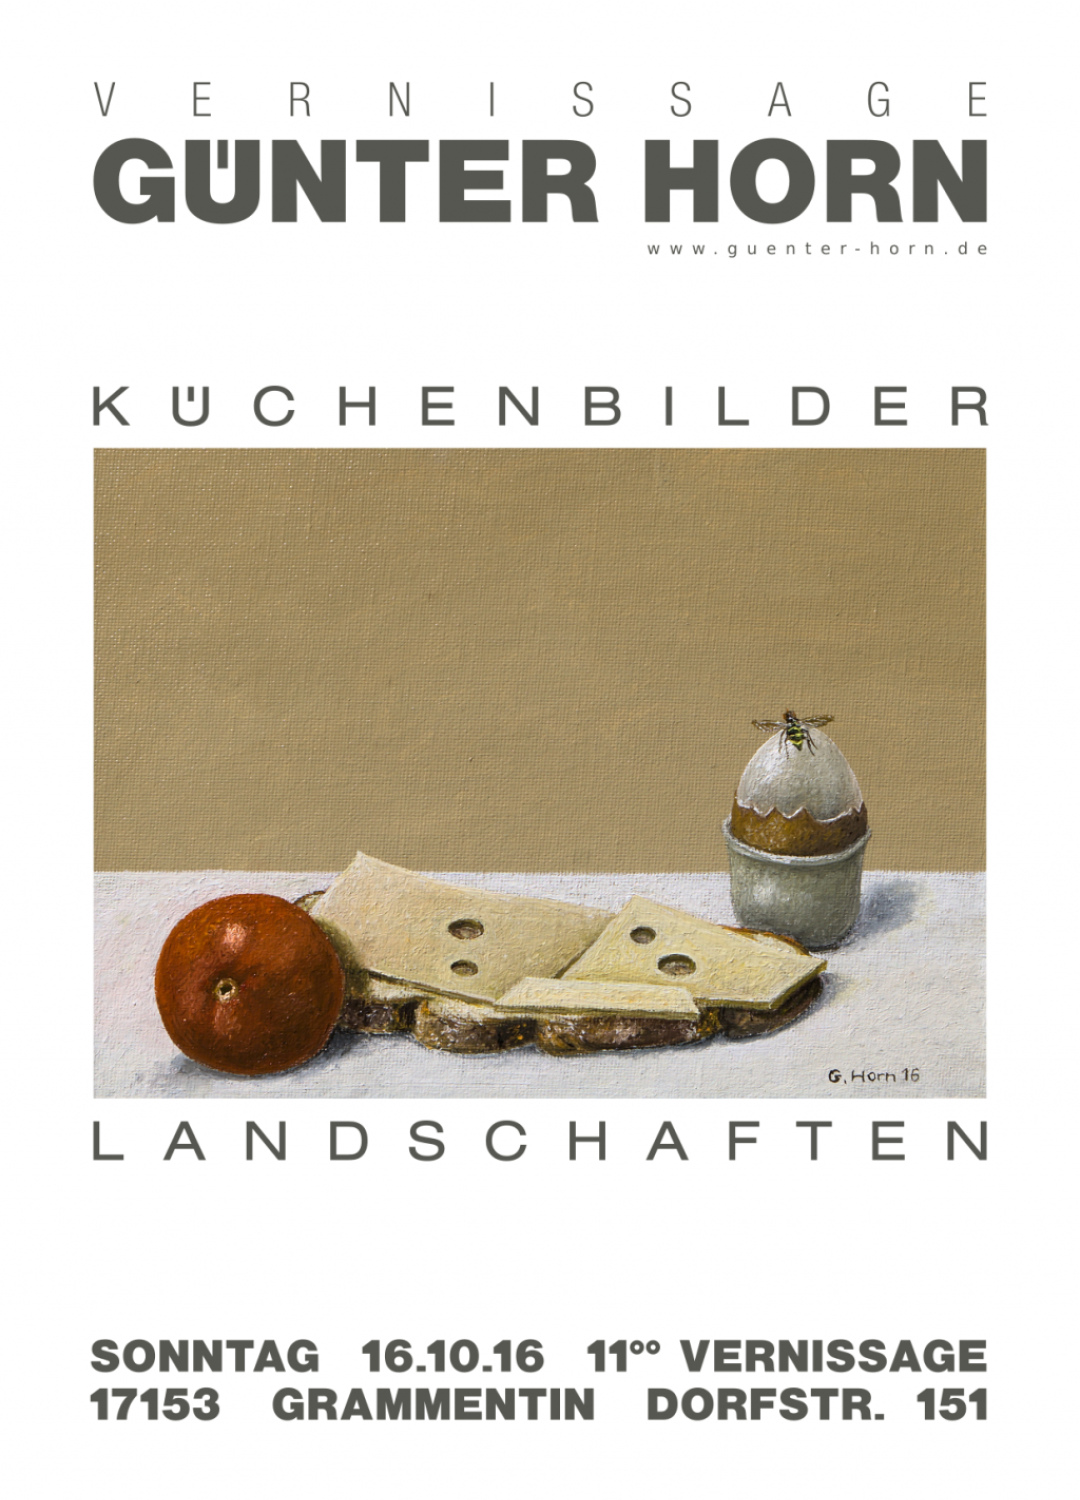 Abbildung von Vernissage Günter Horn Küchenbilder und Landschaften 2016